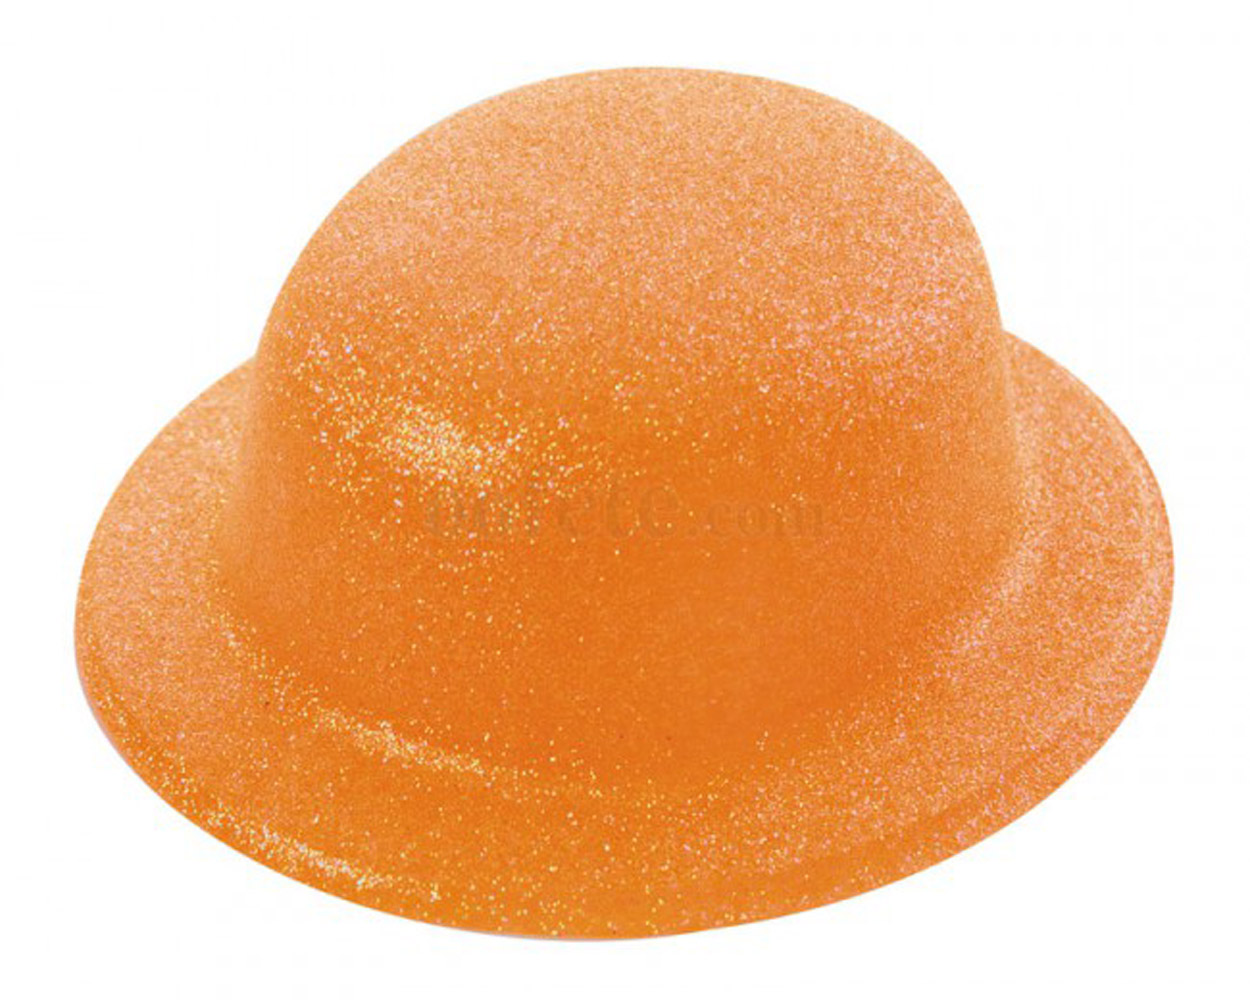 Chapeau melon orange fluo pailletté pour soirée année 80, disco, fêtes